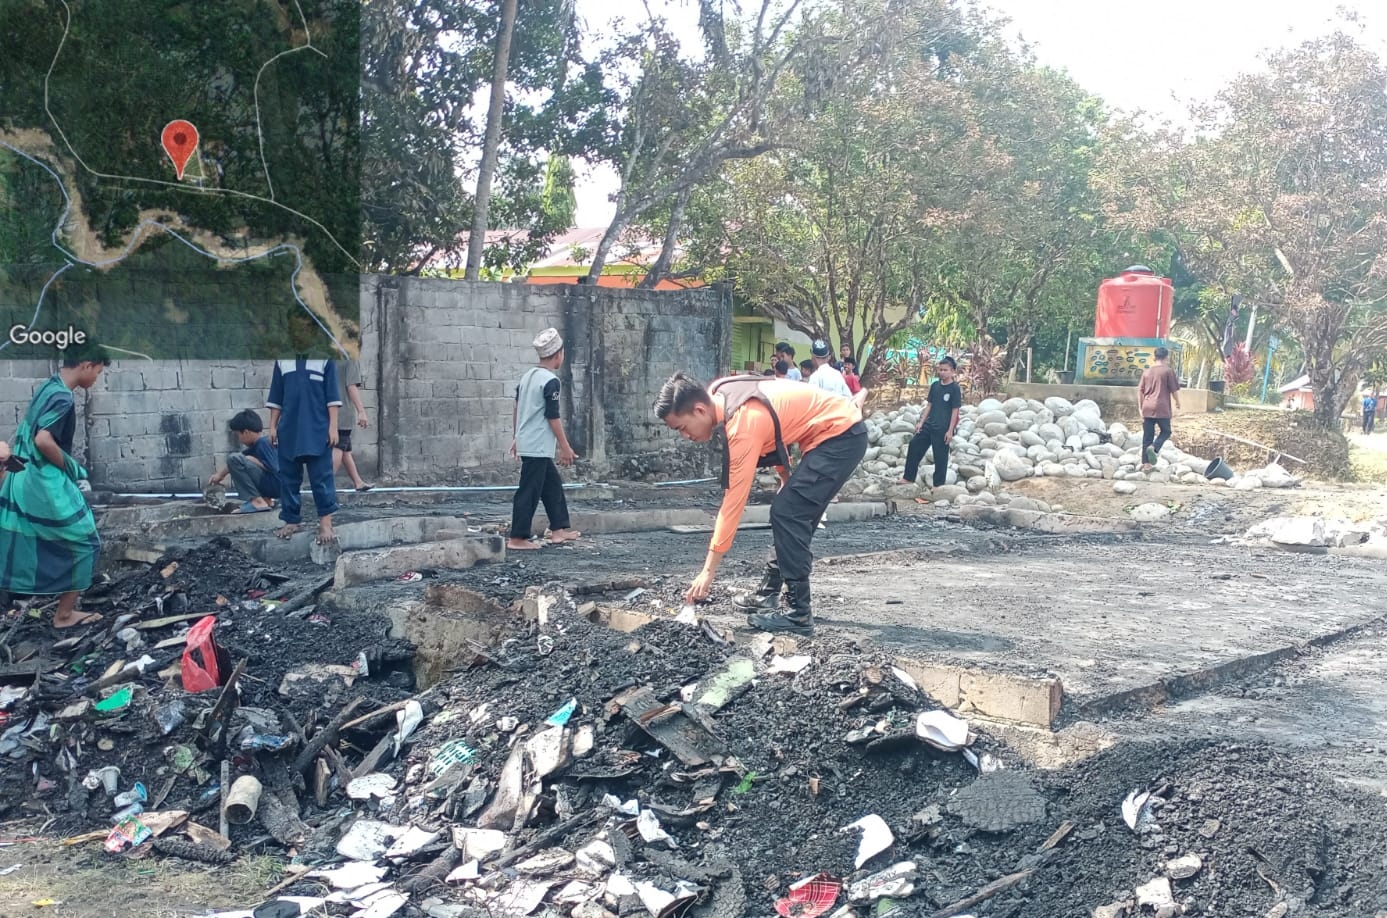 Asrama Ponpes Darul Arqam di Lutra Terbakar, Gubernur Andi Sudirman Kirim Bantuan